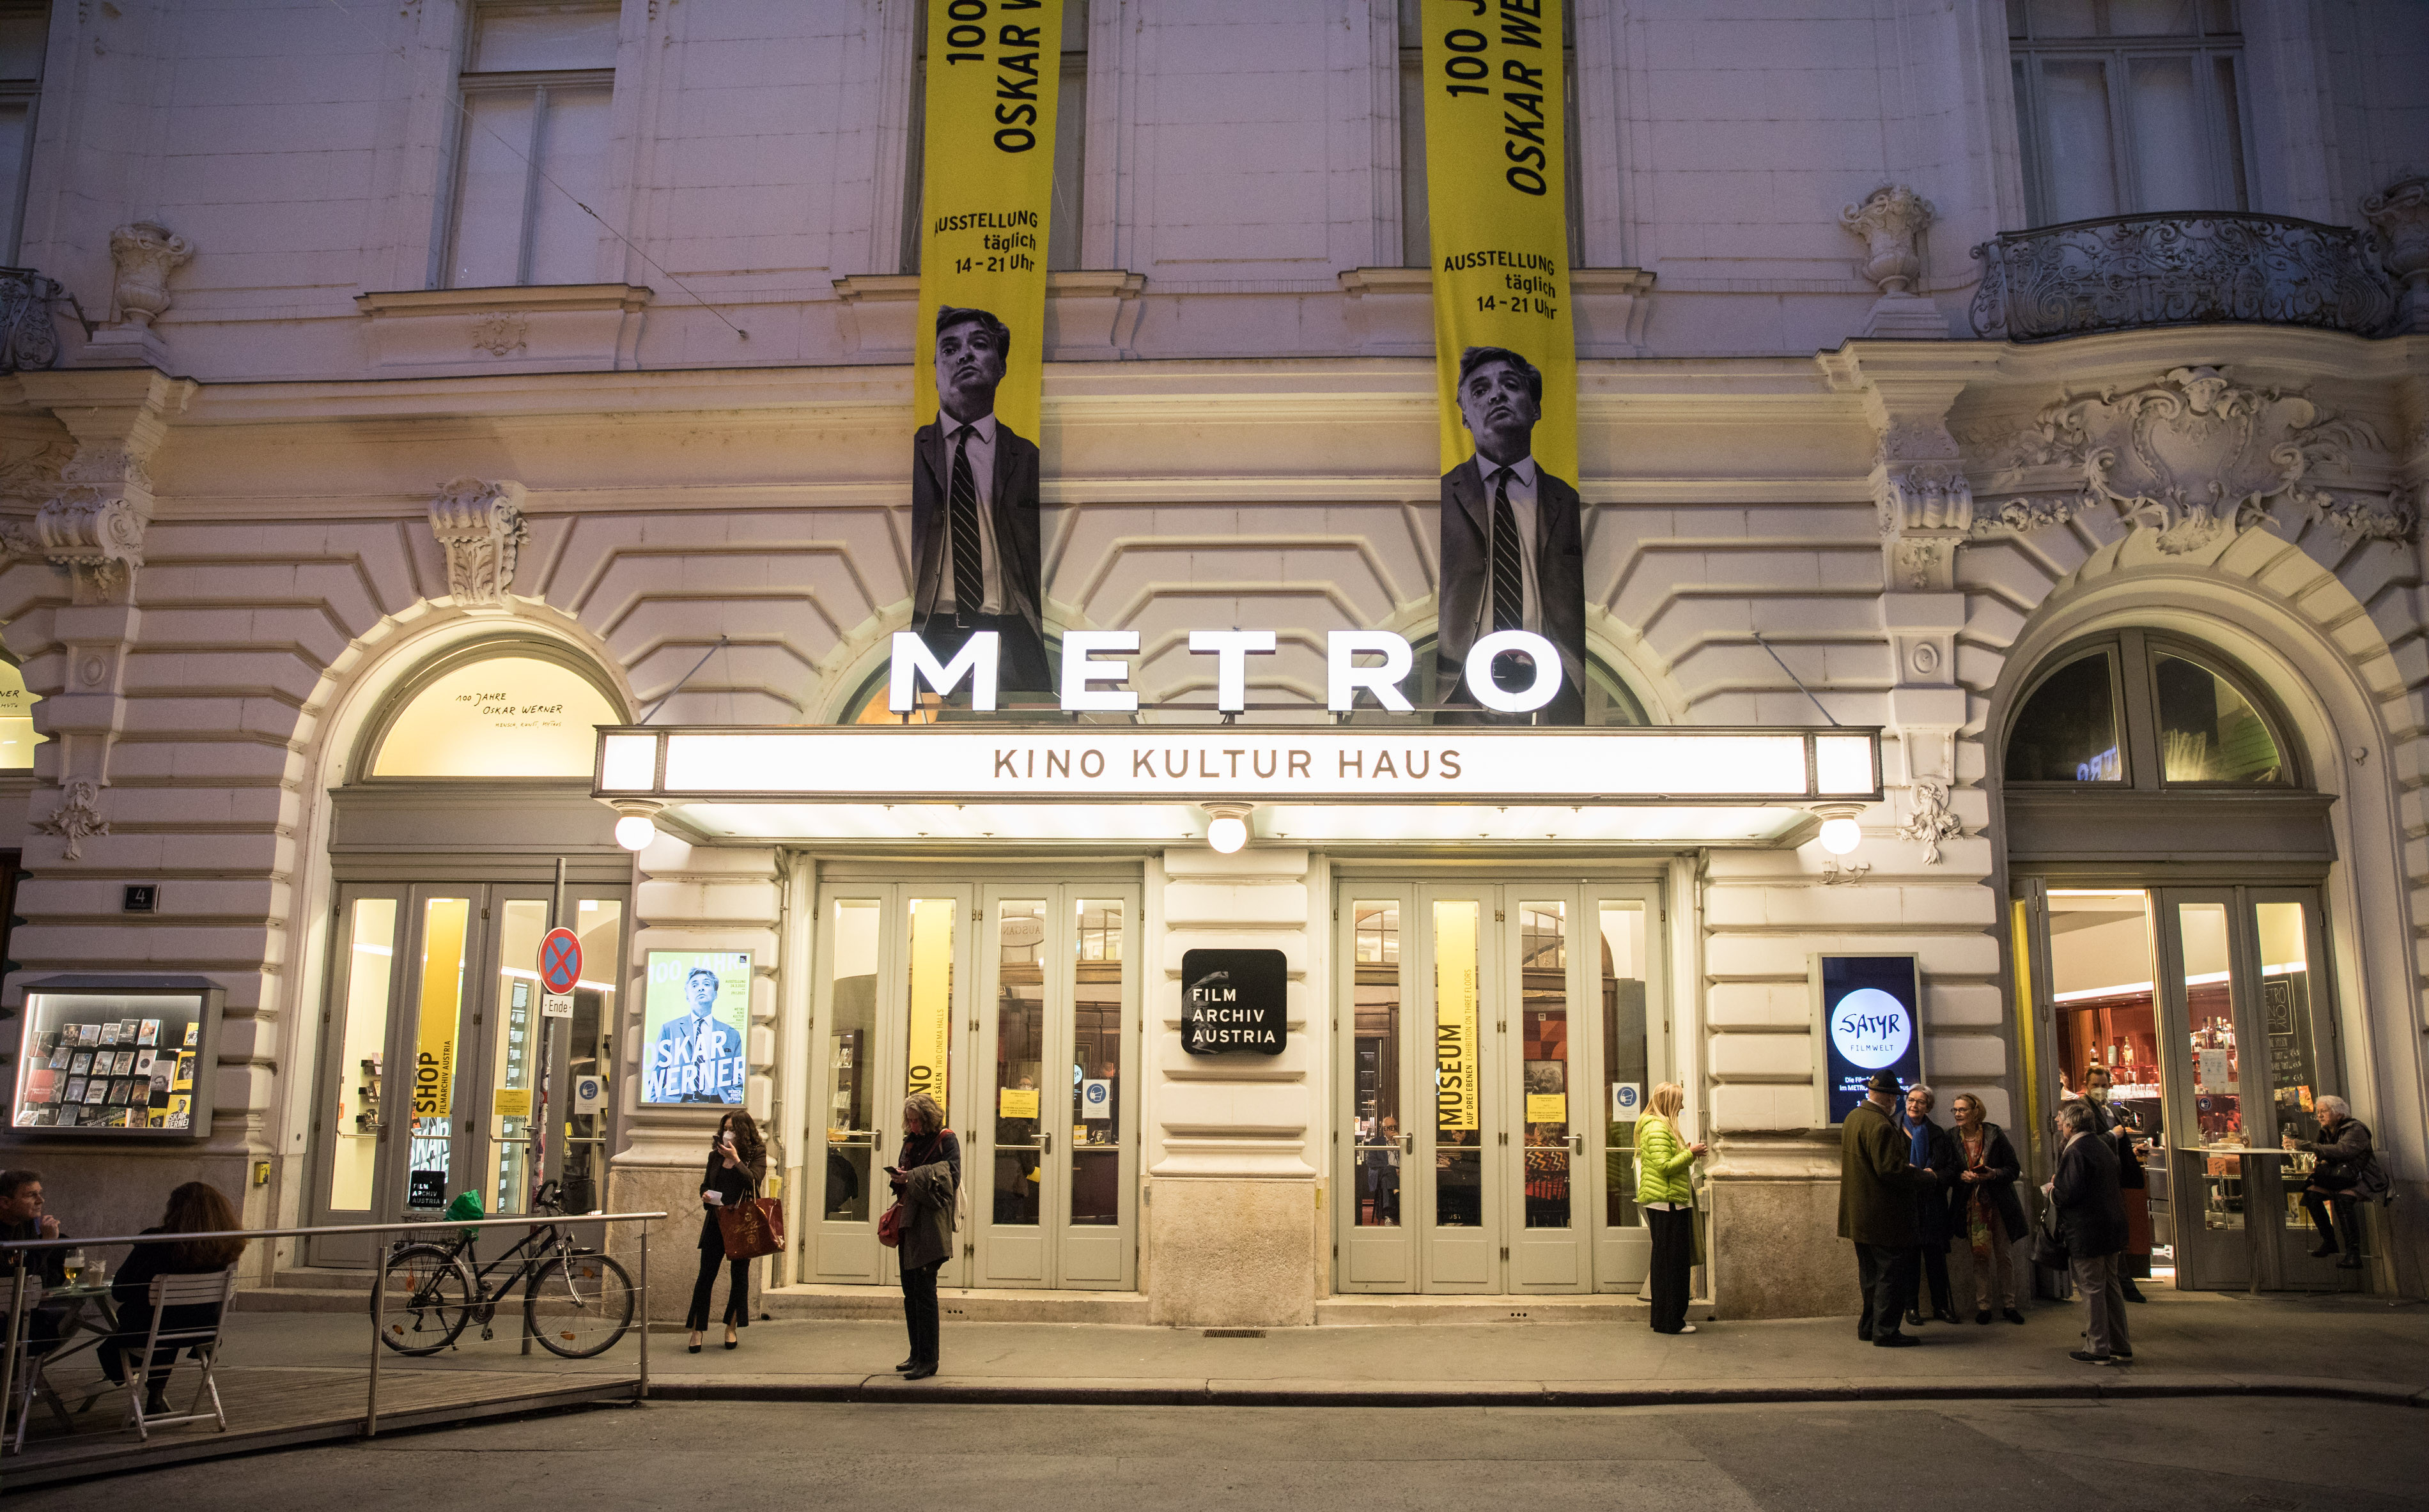 Der Eingang zum Metro Kino Kultur Haus mit abendlicher Beleuchtung